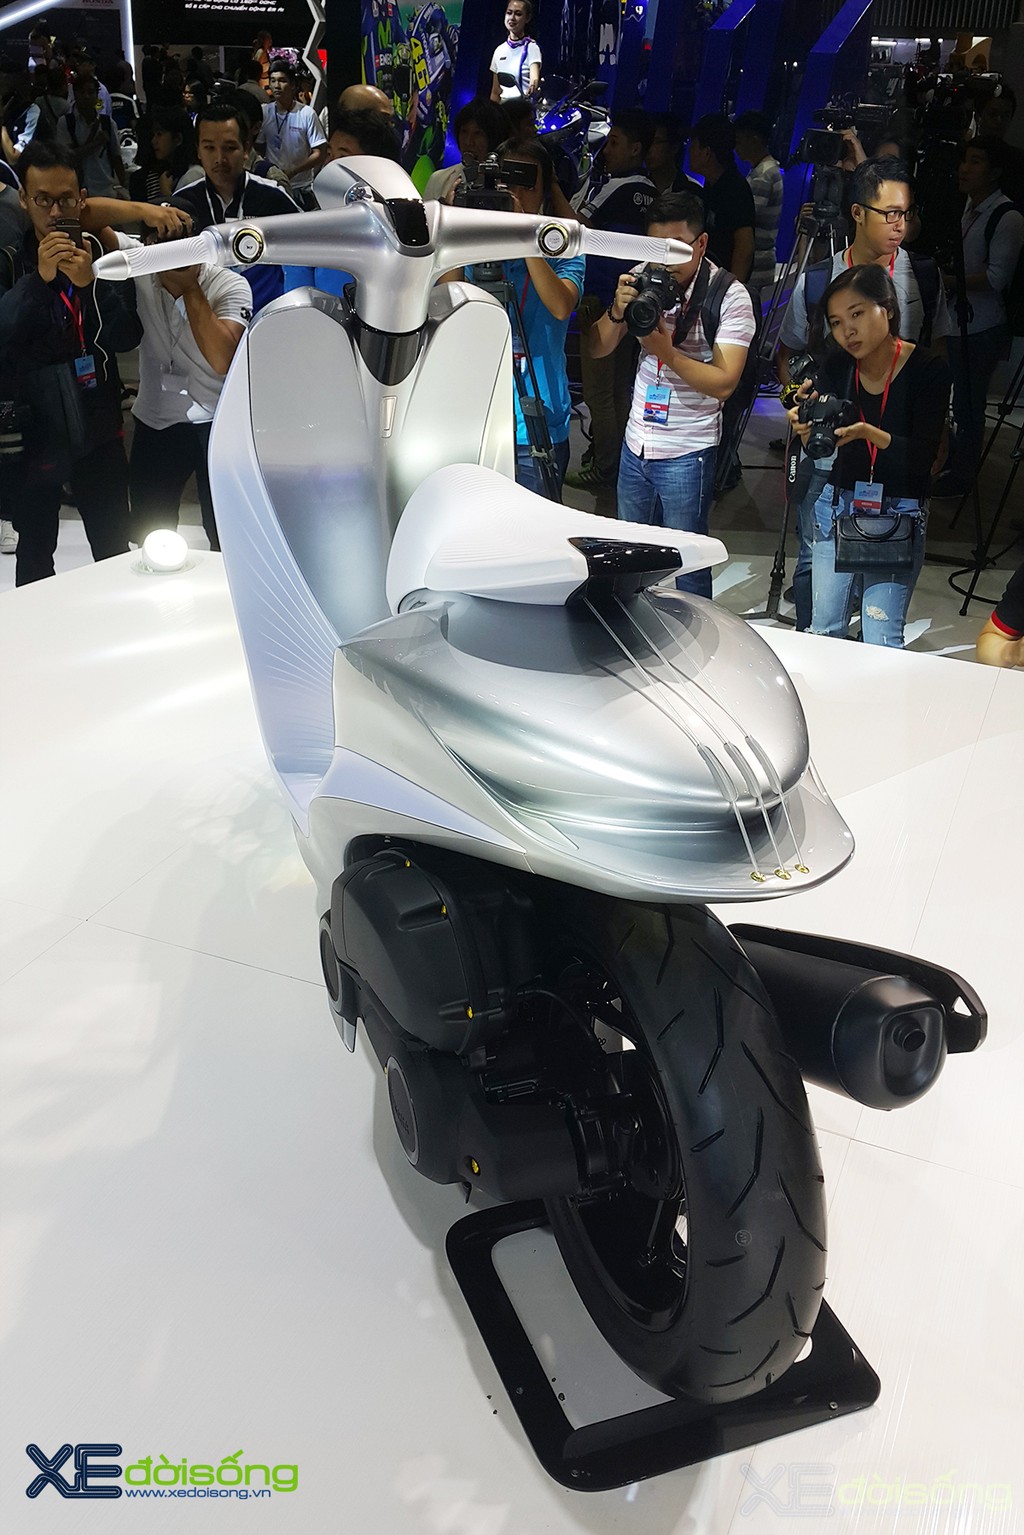 Yamaha Việt Nam lại ra mắt chiếc Glorious Concept tuyệt đẹp tại Triển lãm xe máy ảnh 3